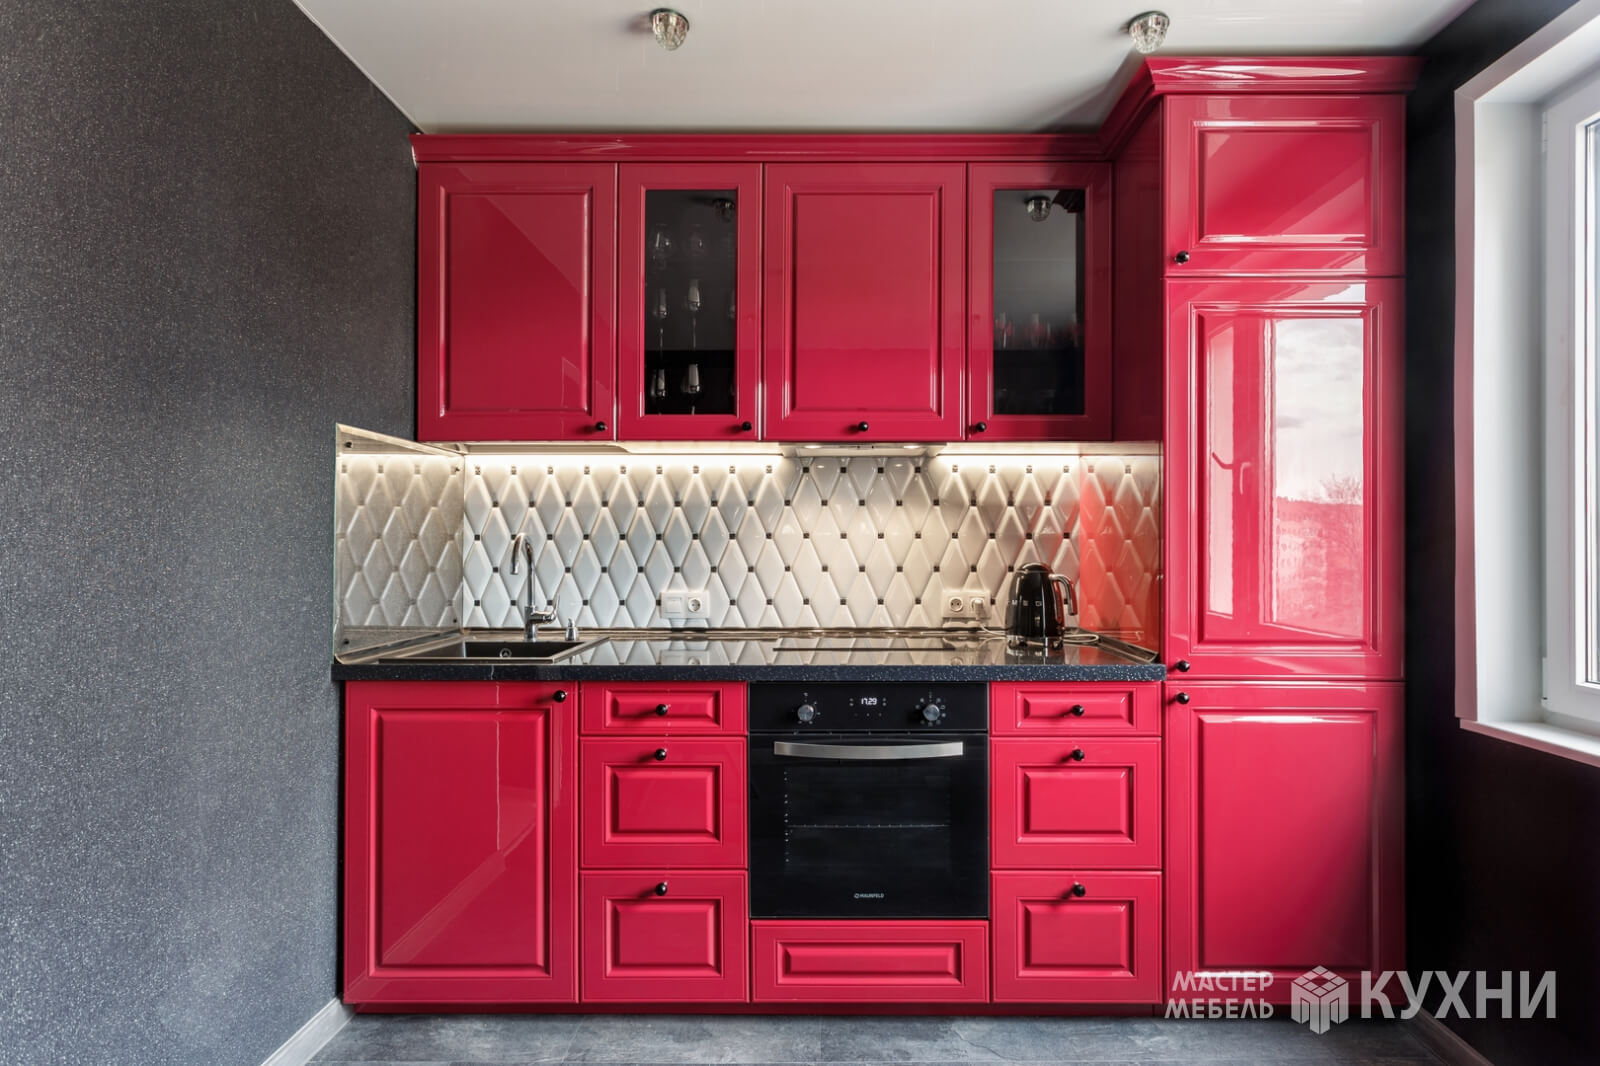 Прямая кухня Париж из крашеного МДФ - Цвет: Розовый Красный - 1